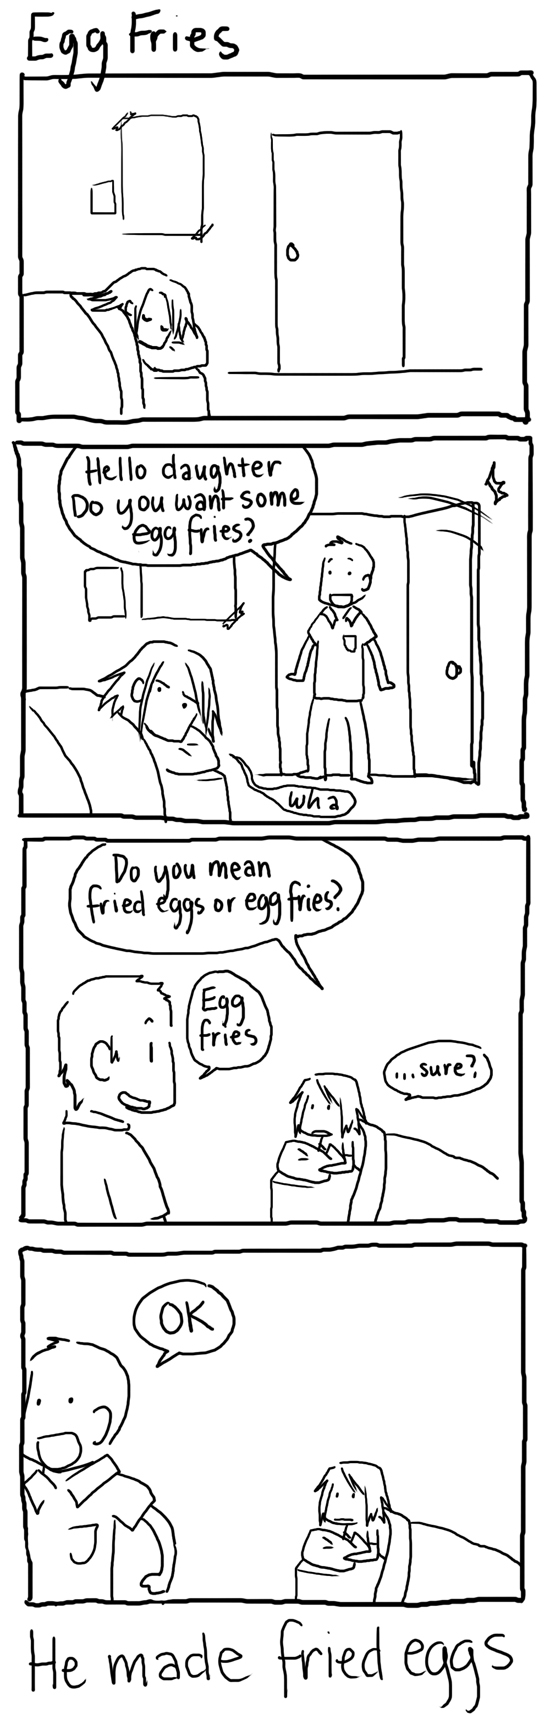 Egg Fries